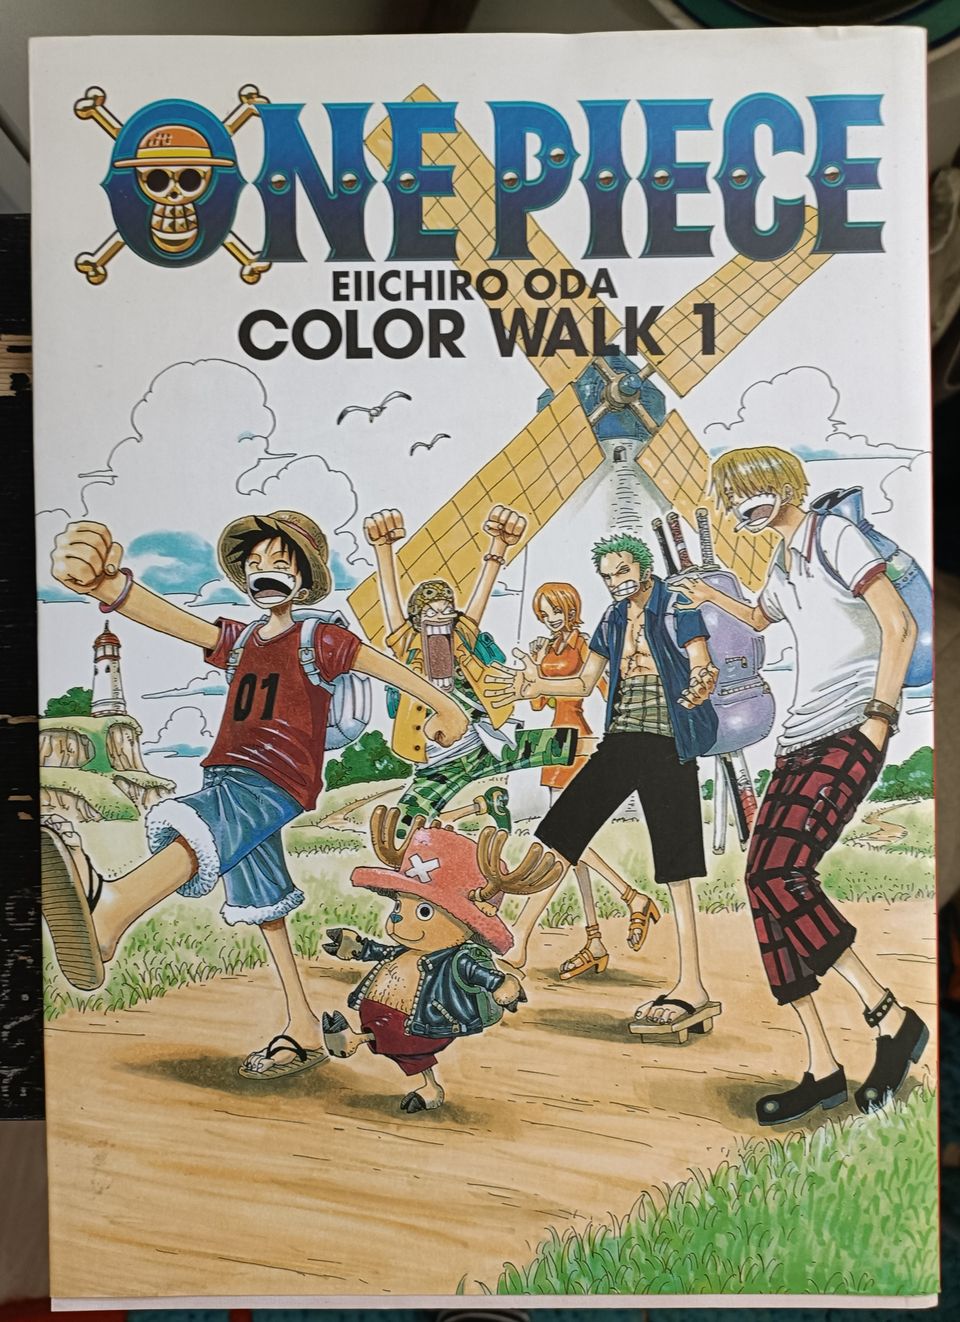 One piece color walk no. 1